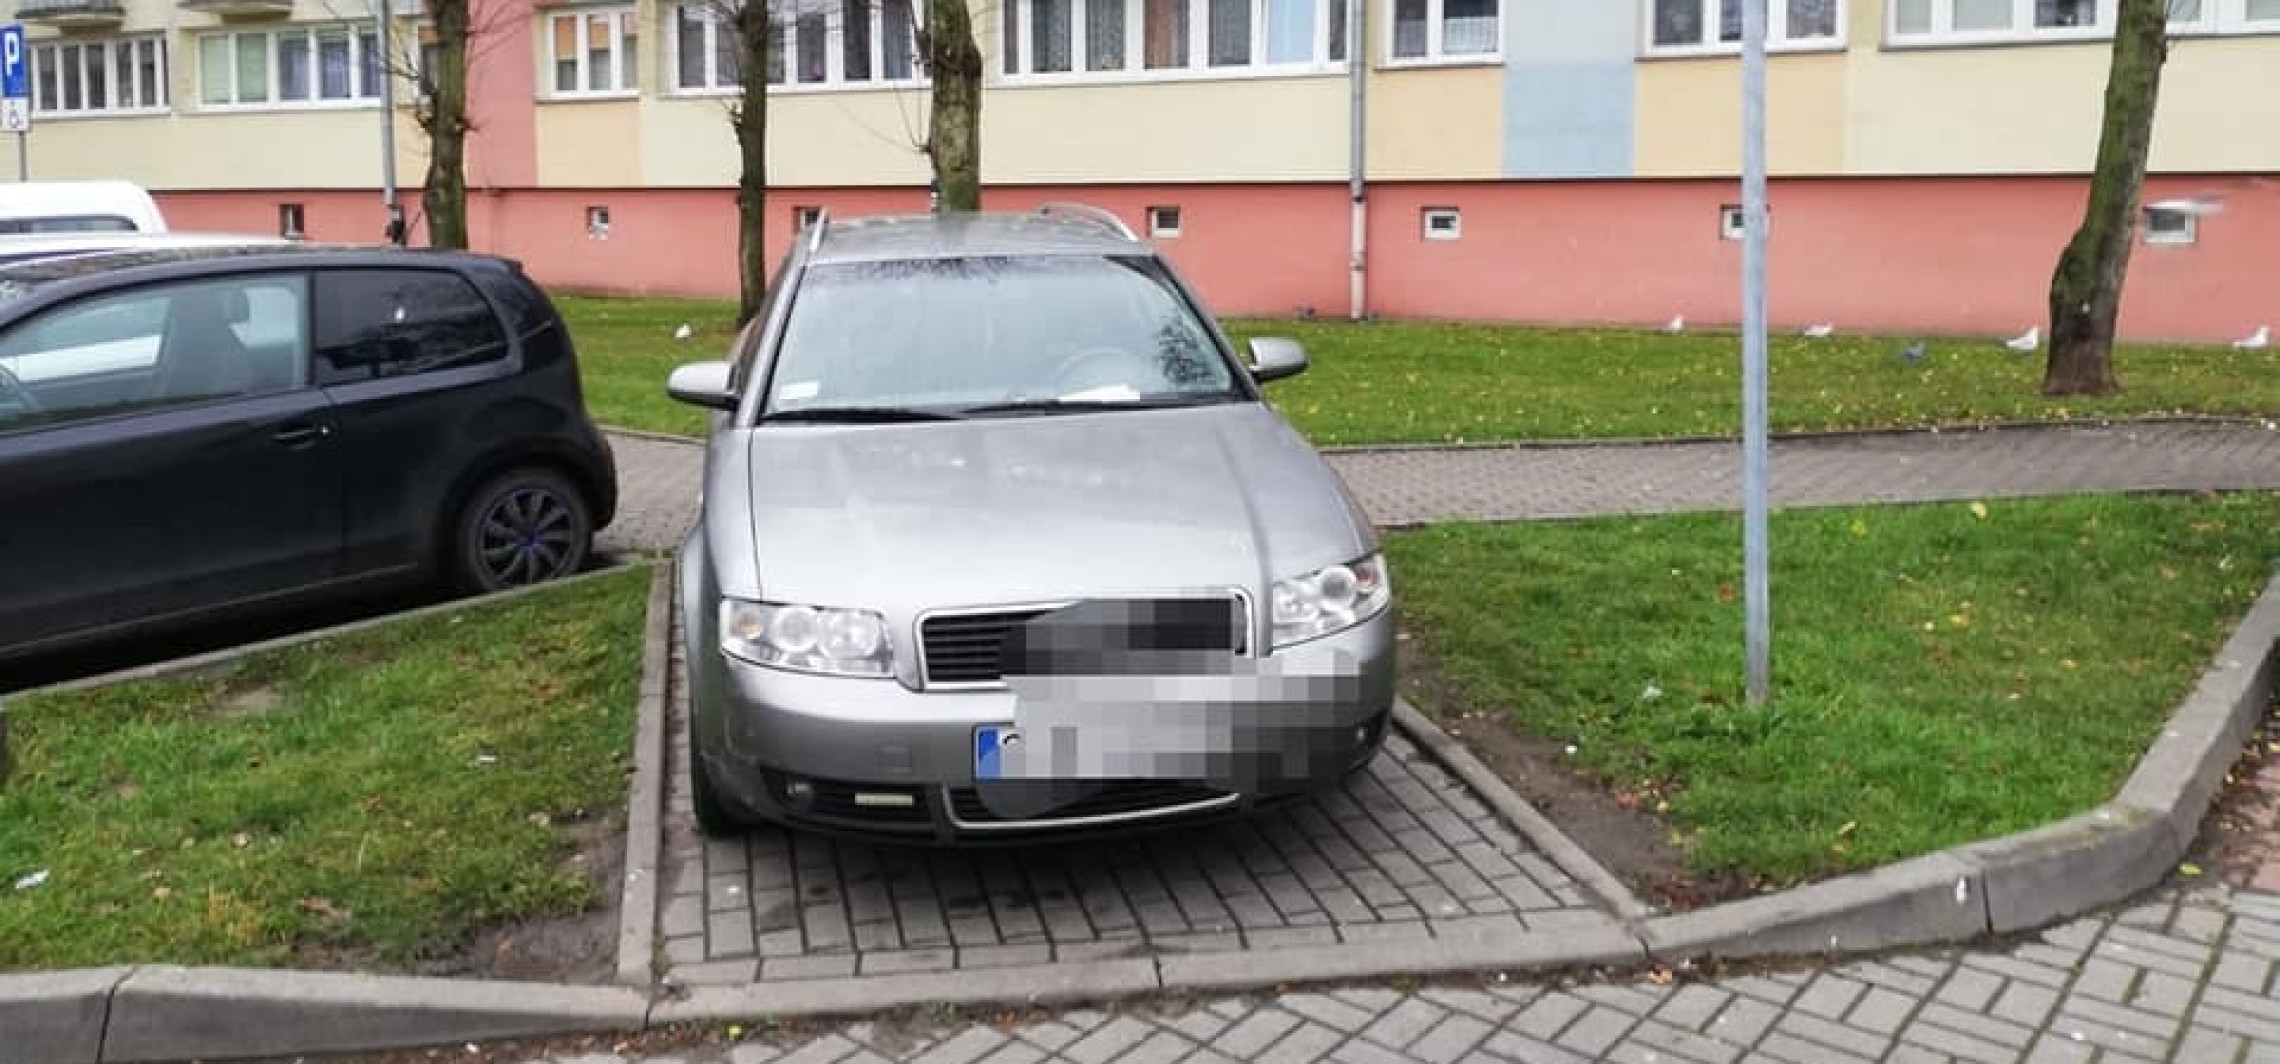 Inowrocław - Za takie parkowanie posypały się mandaty